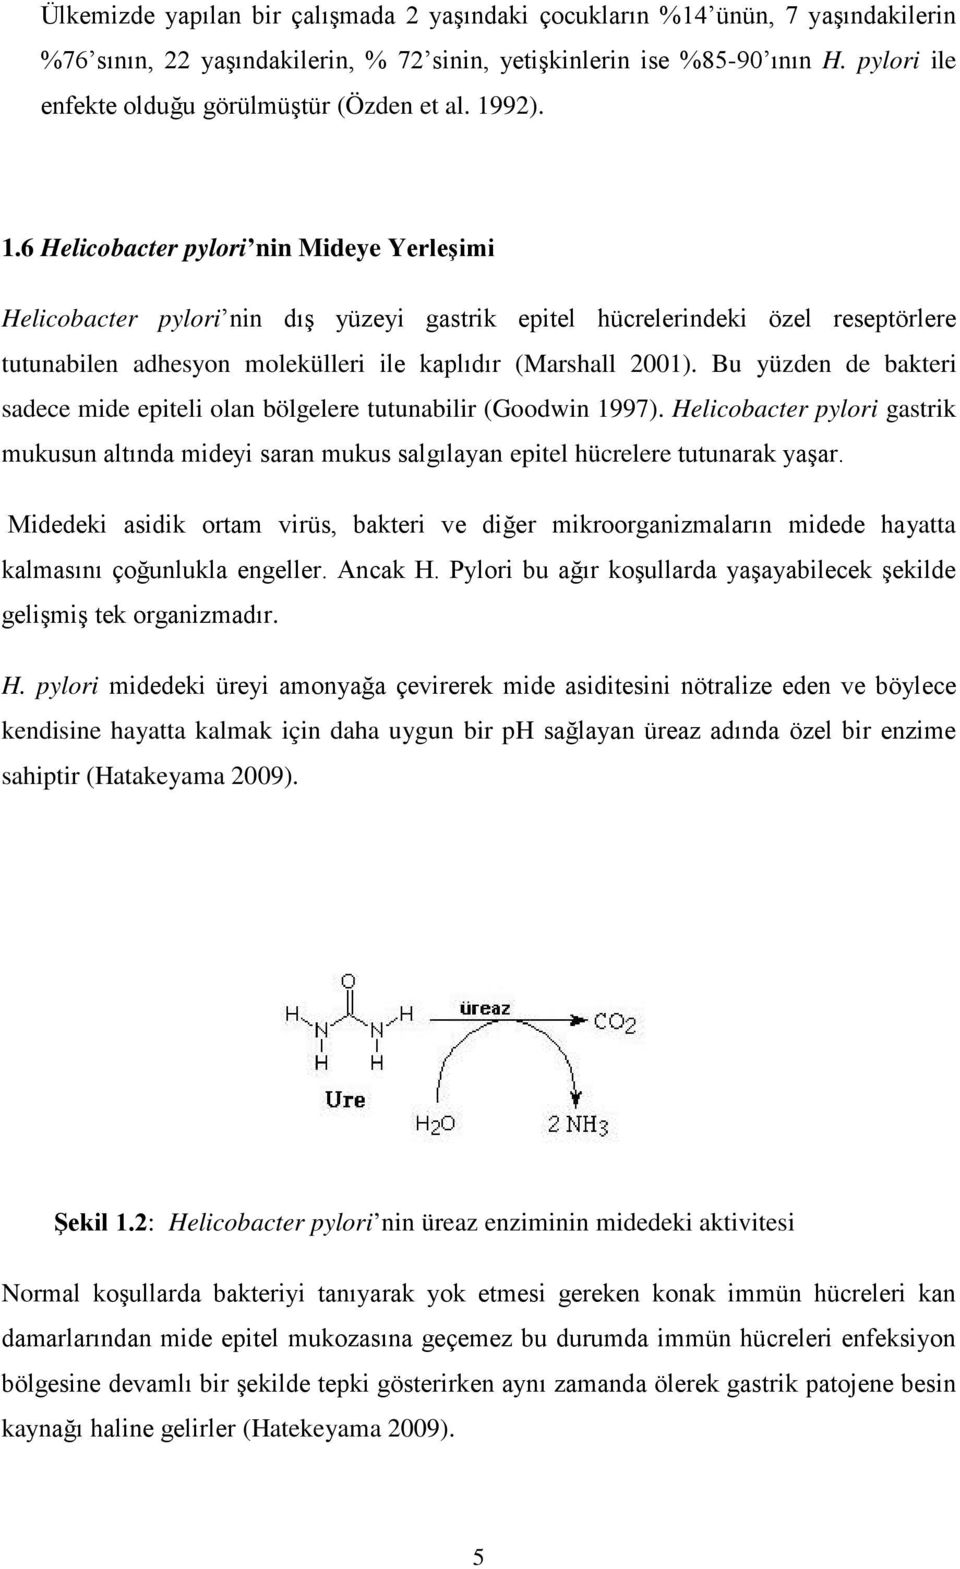 92). 1.6 Helicobacter pylori nin Mideye Yerleşimi Helicobacter pylori nin dış yüzeyi gastrik epitel hücrelerindeki özel reseptörlere tutunabilen adhesyon molekülleri ile kaplıdır (Marshall 2001).